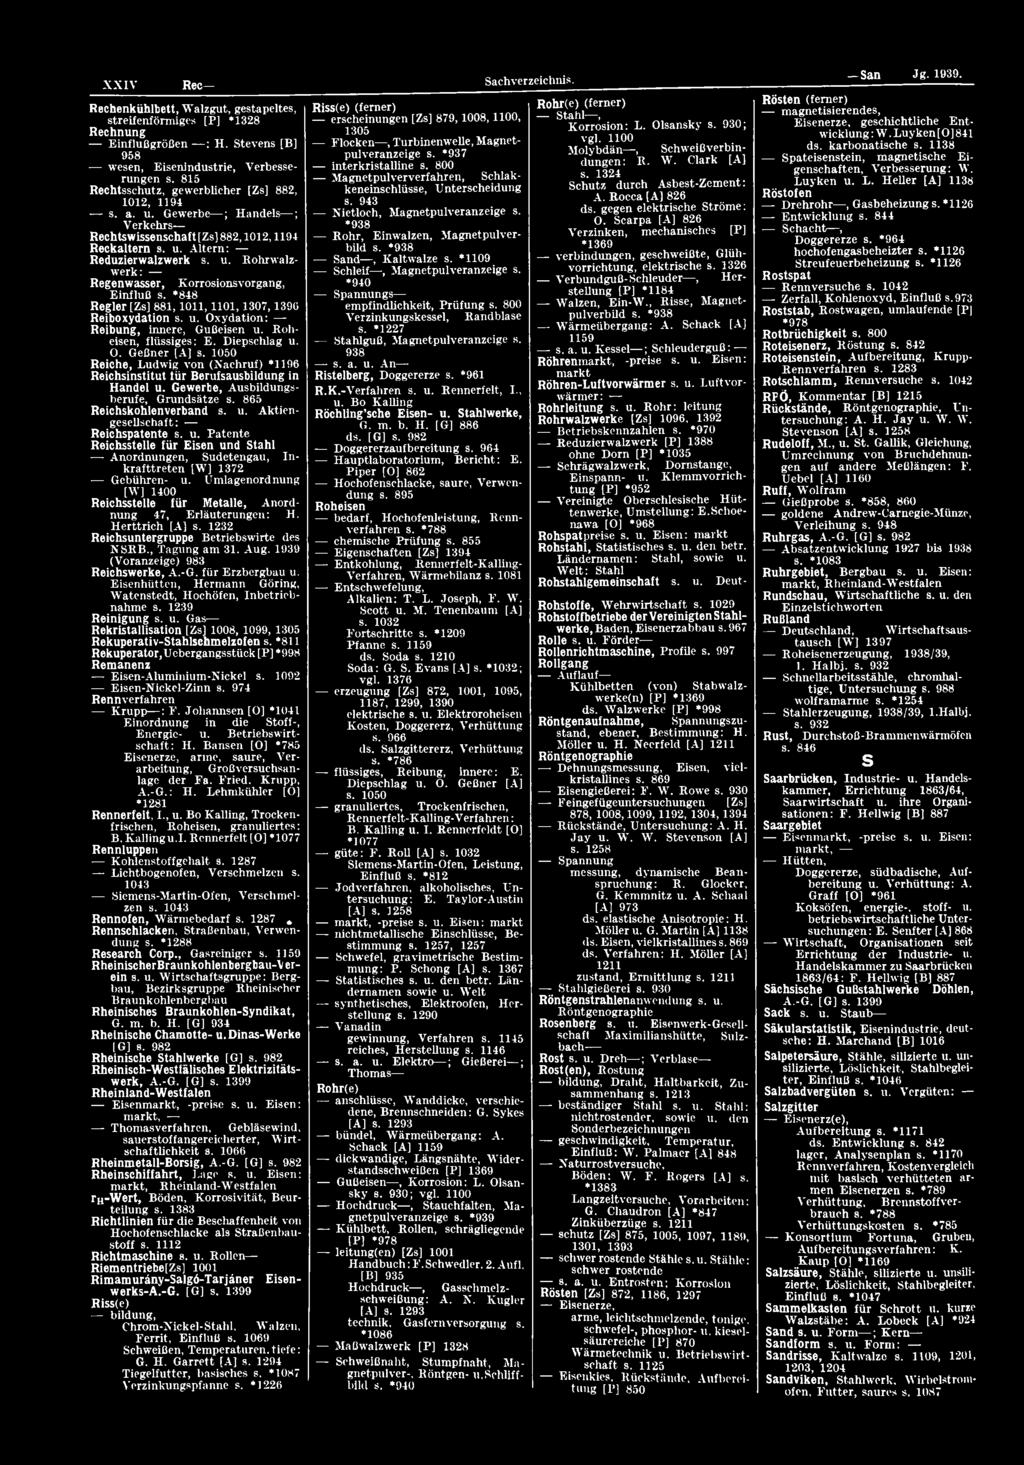 Umlagenordnung [W] 1400 Reichsstelle für Metalle, Anordnung 47, Erläuterungen: H. H erttrich [A] s. 1232 Reichsuntergruppe Betriebswirte des NSRB., Tagung am 31. Aug.